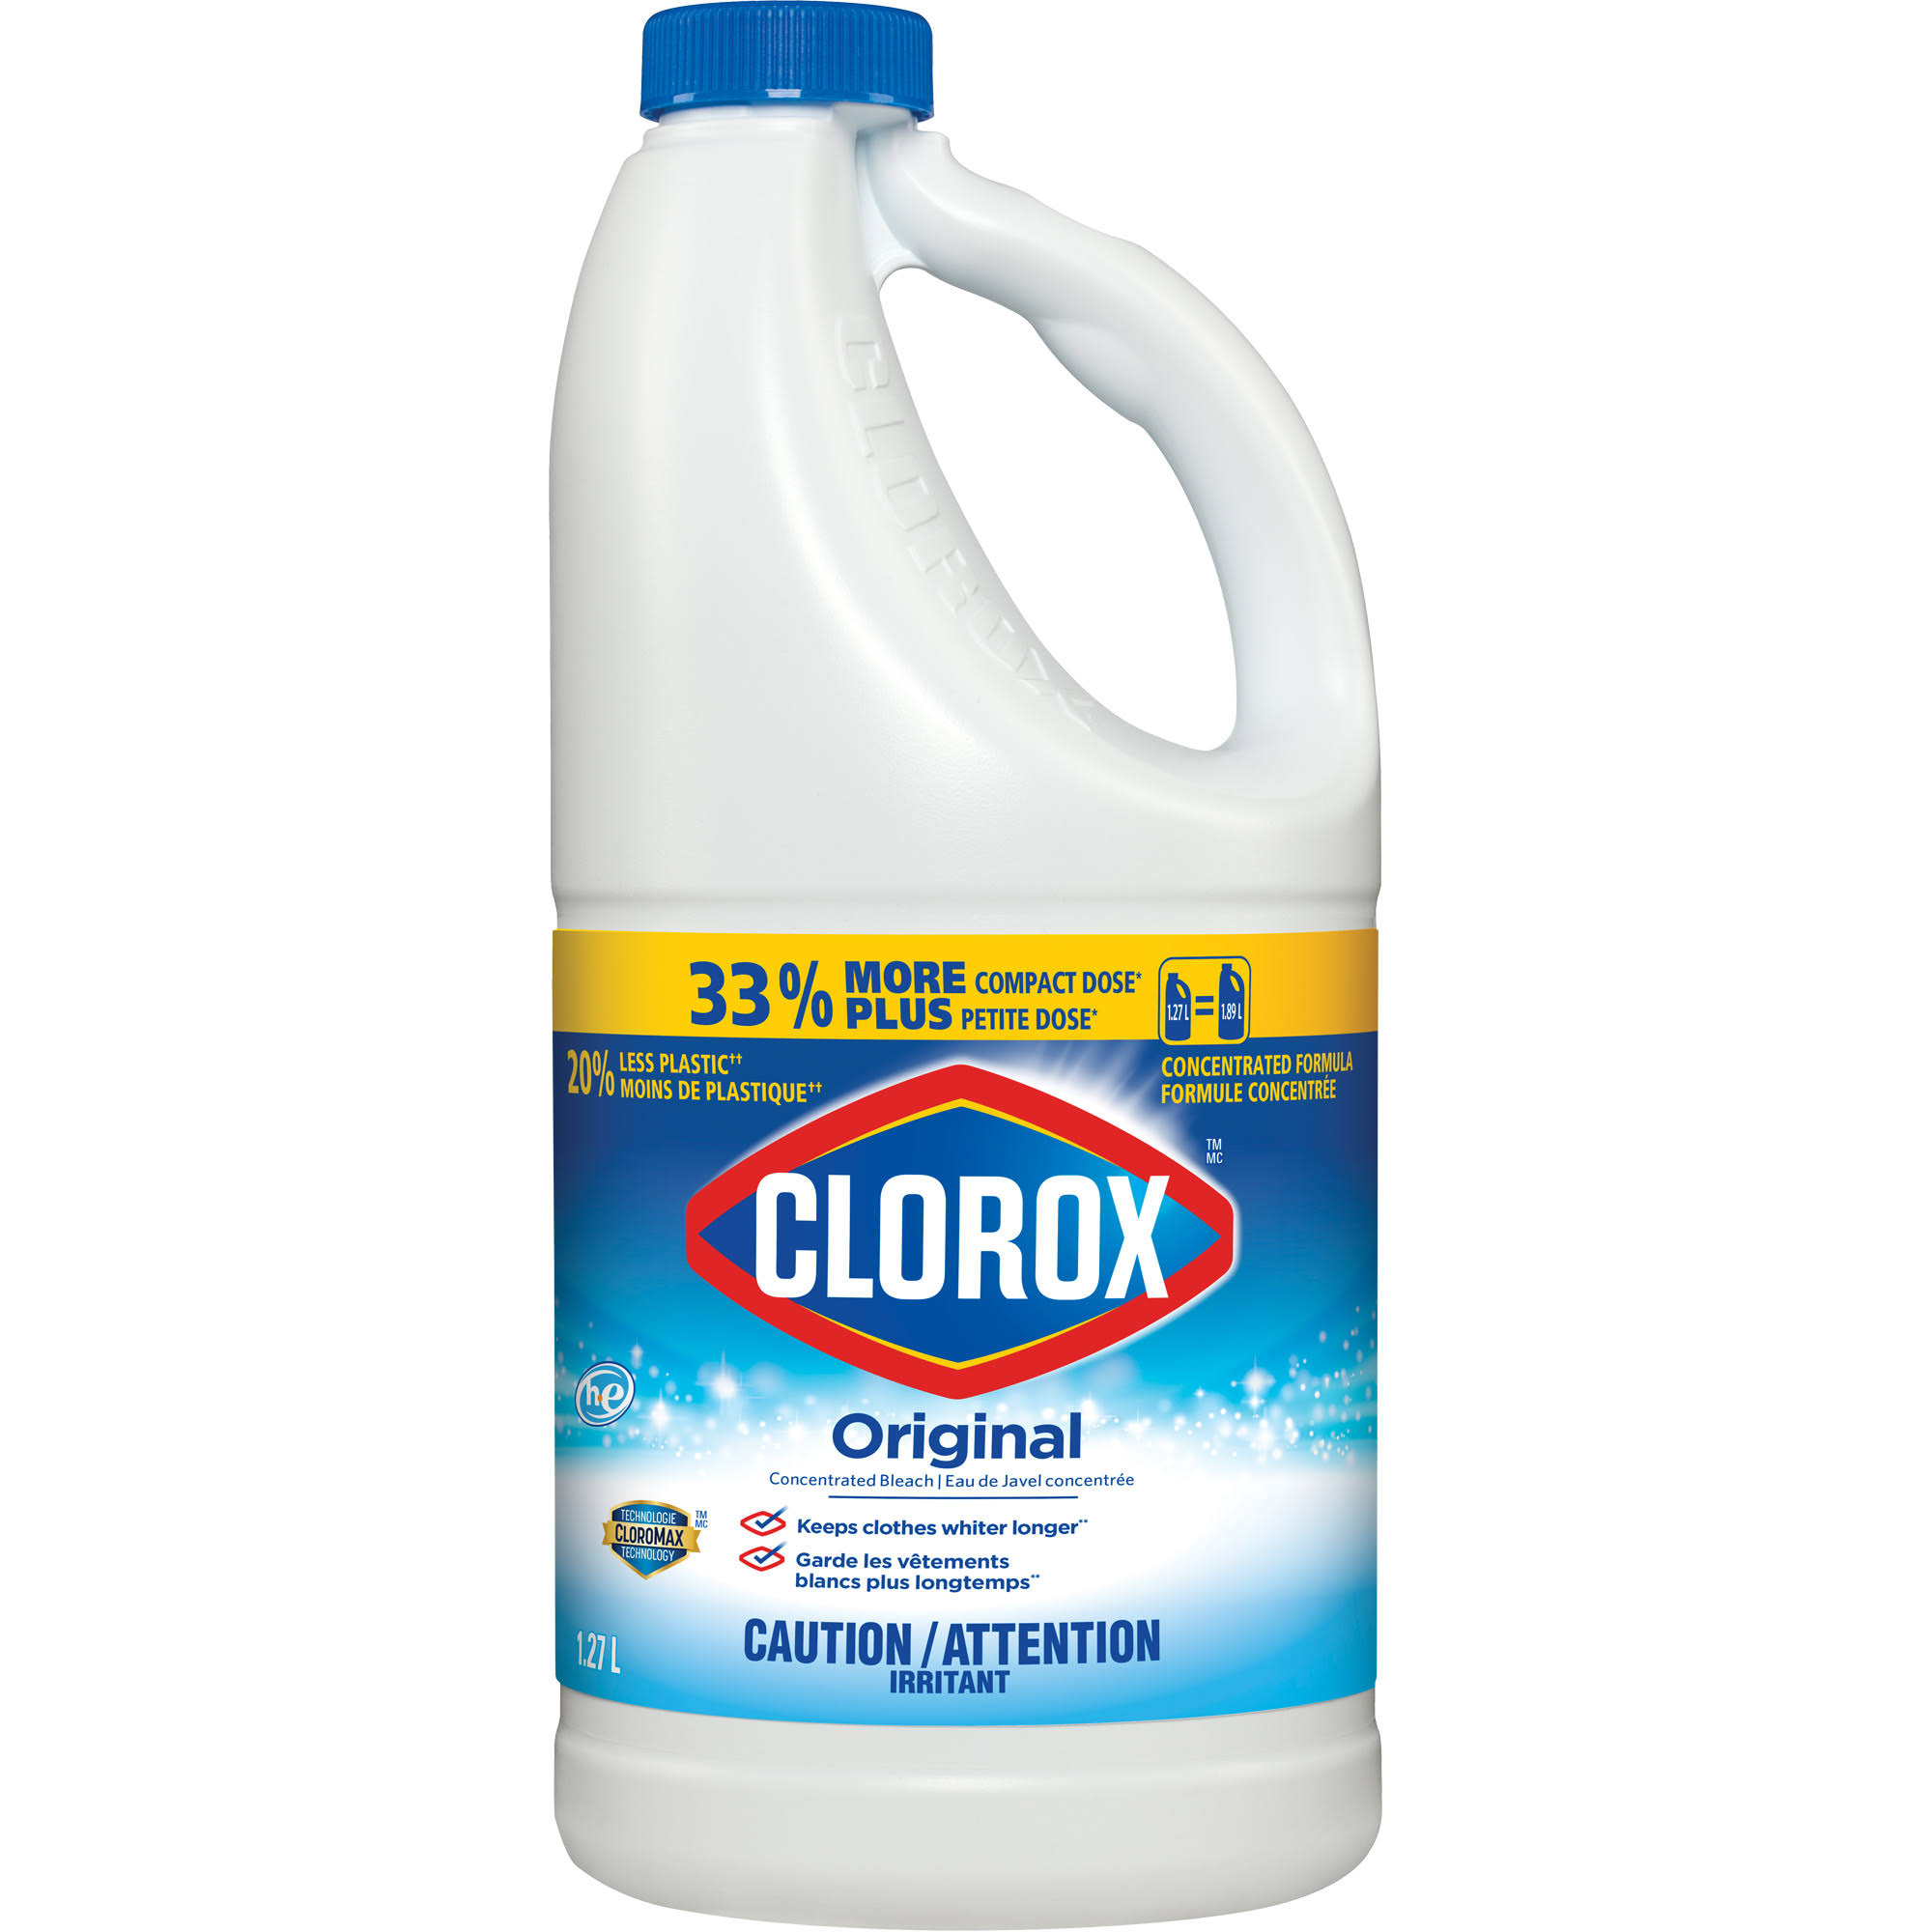 Clorox Original Bleach (1.27 L)